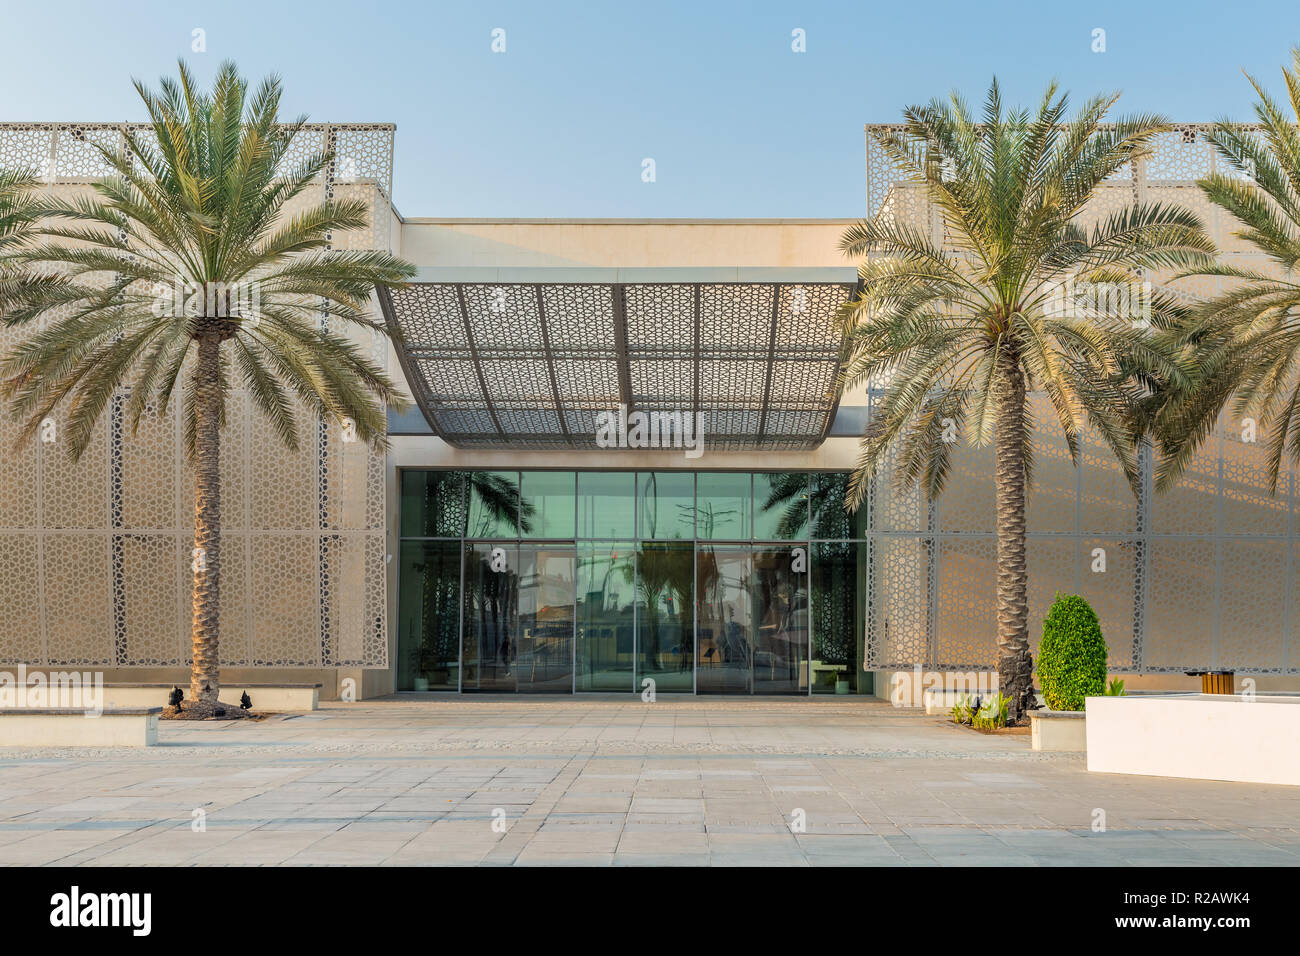 Abu Dhabi, Emiratos Árabes Unidos, Octubre 7, 2018: Manarat Al Saadiyat. Este es un centro de alta tecnología para exhibiciones culturales locales e internacionales. Foto de stock